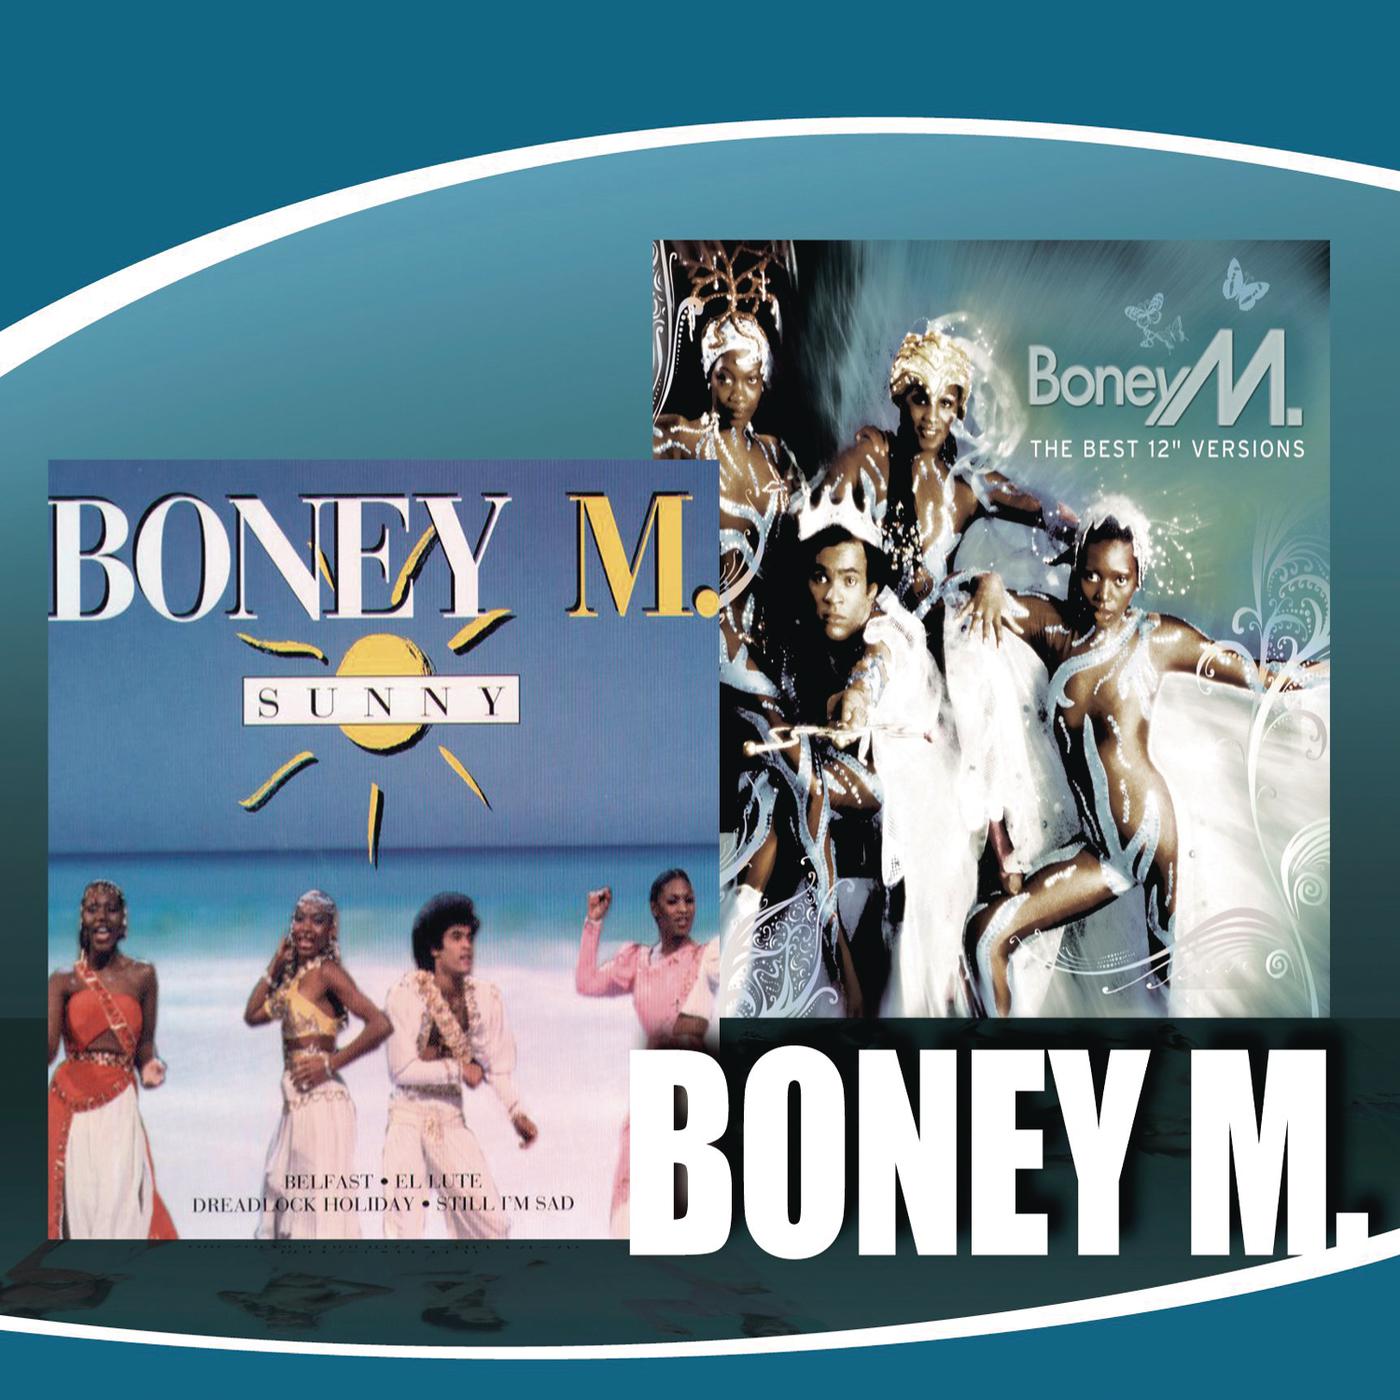 Boney m kalimba de. Boney m Sunny обложка. Boney m обложки альбомов. Boney m 2014. Первый состав Boney m.